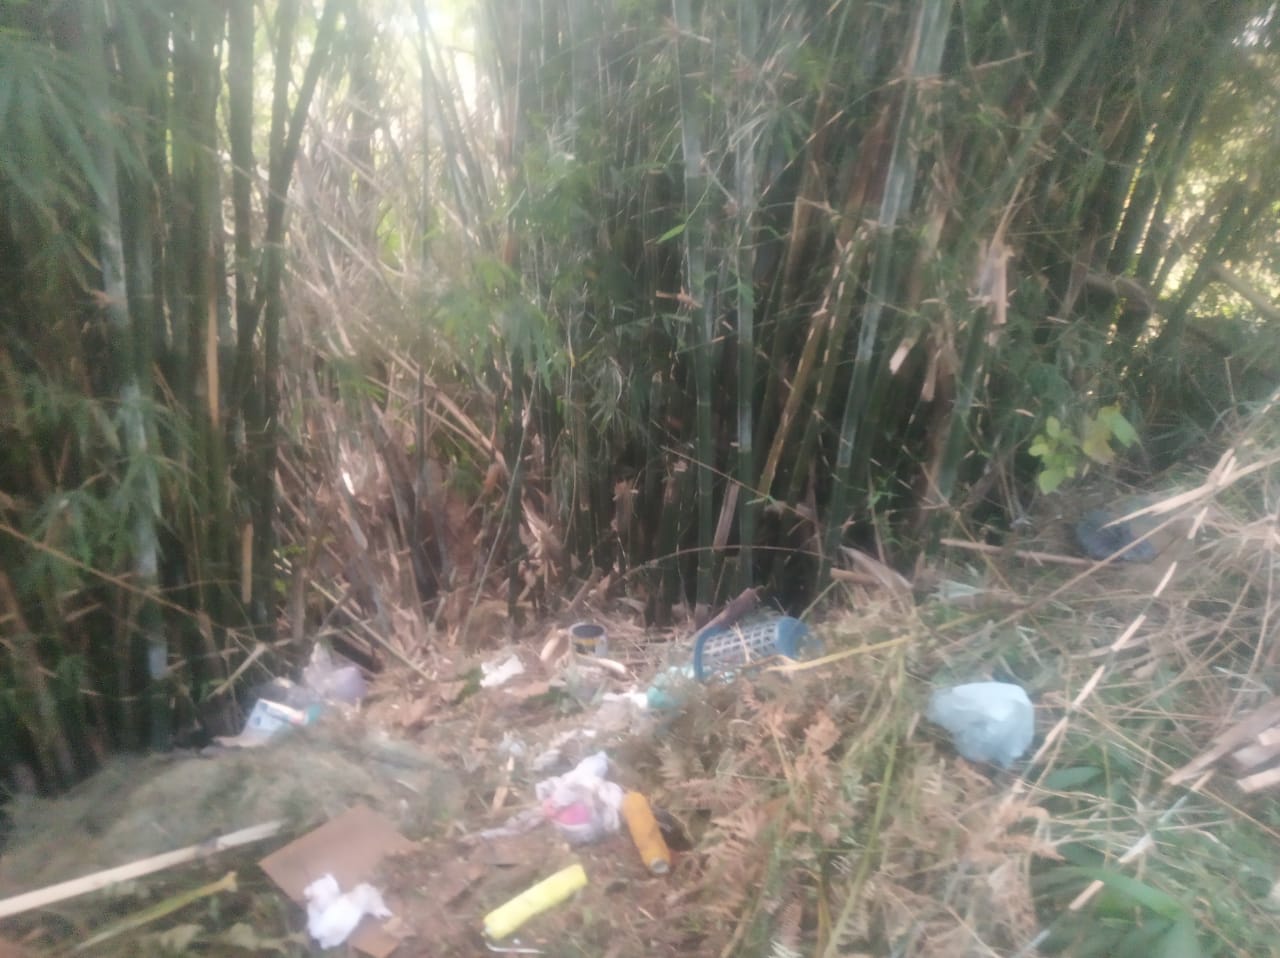 O despeko de lixo no Parque Santa Elisa (Foto de leitor)